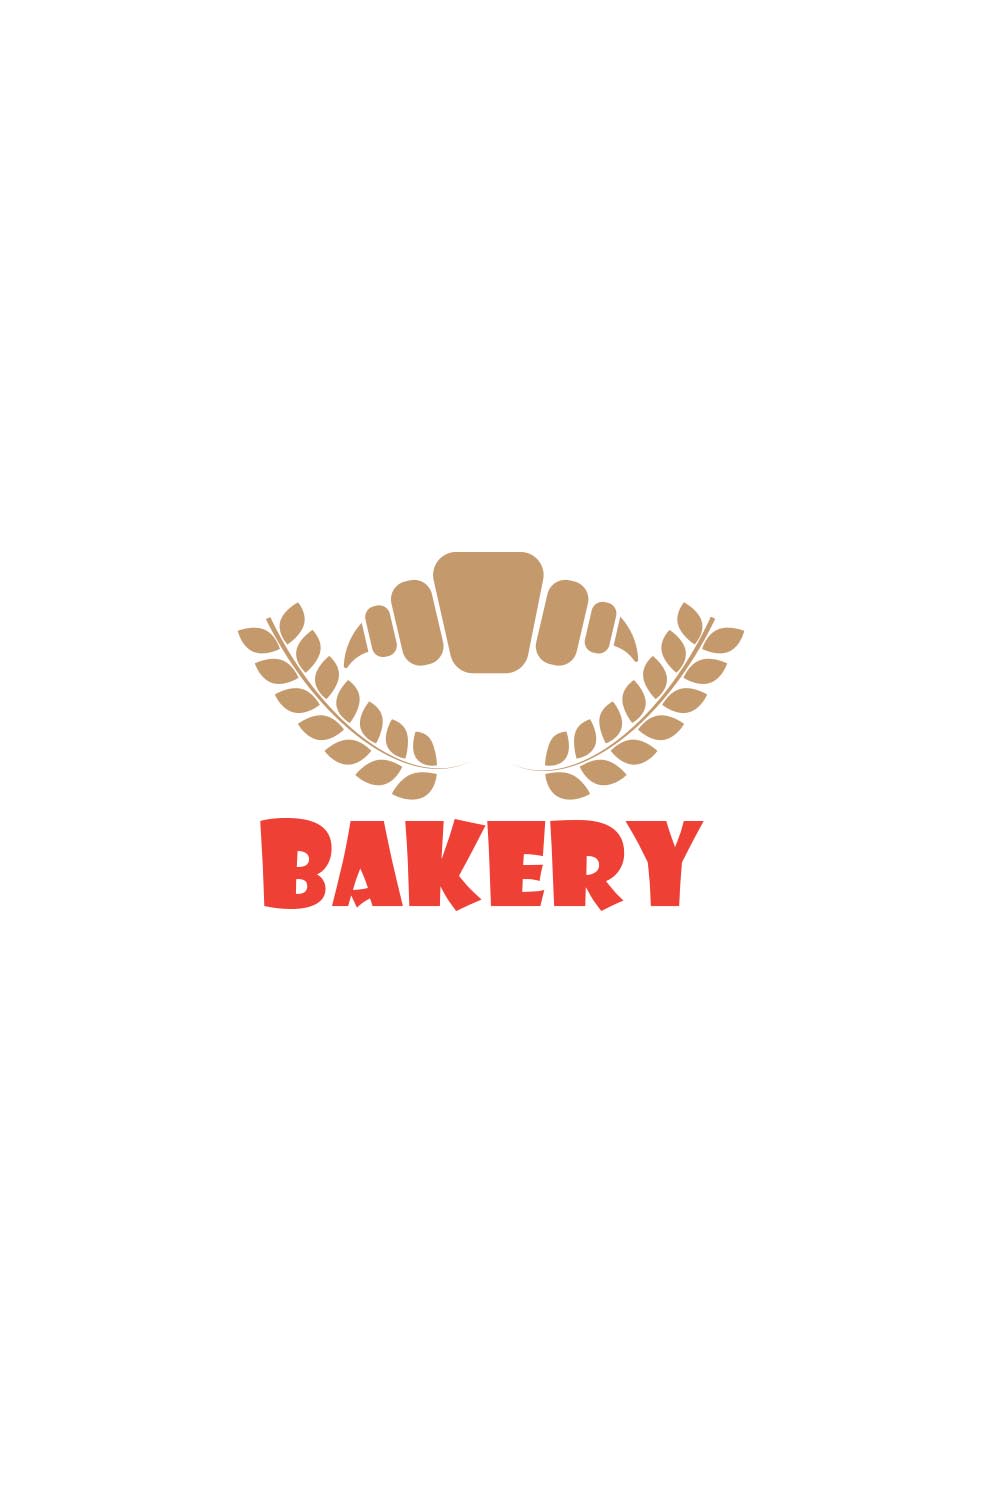 bakery brand logo pinterest preview image.